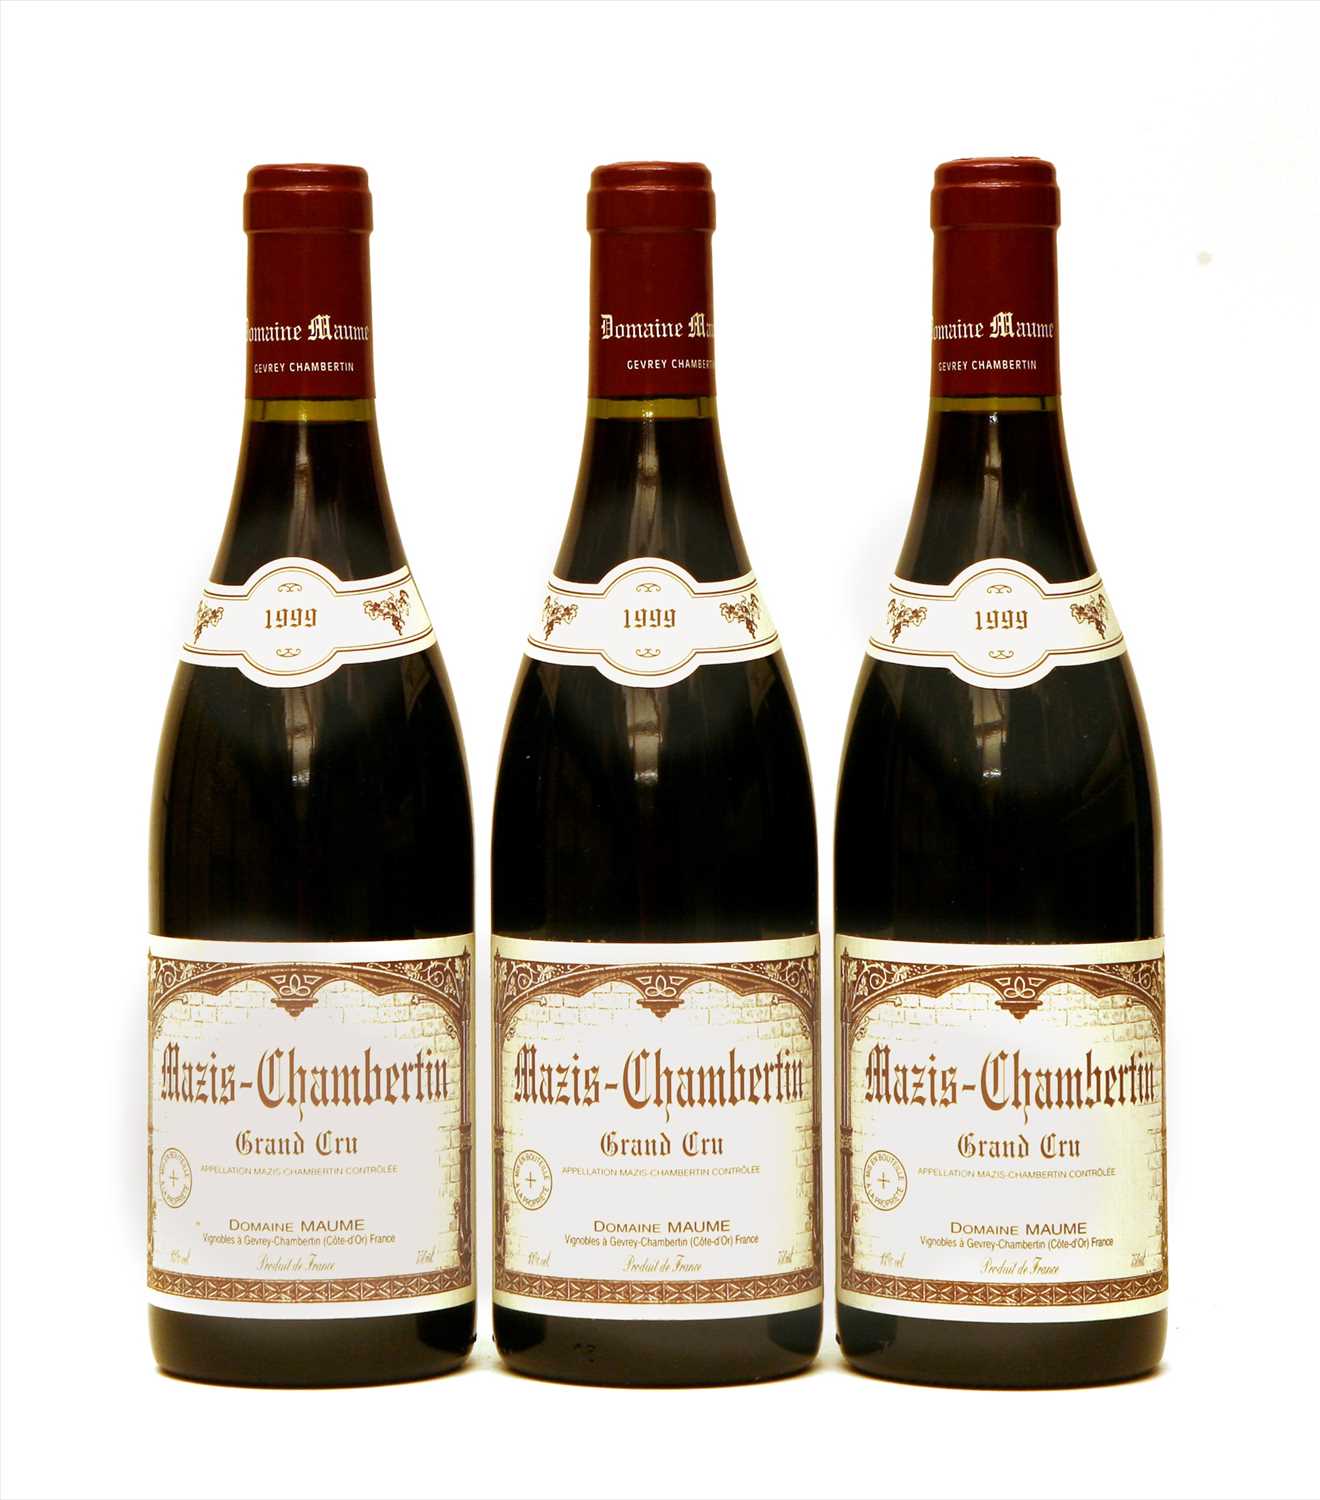 Lot 160 - Domaine Maume, Mazis-Chambertin, Grand Cru, 1999, three bottles